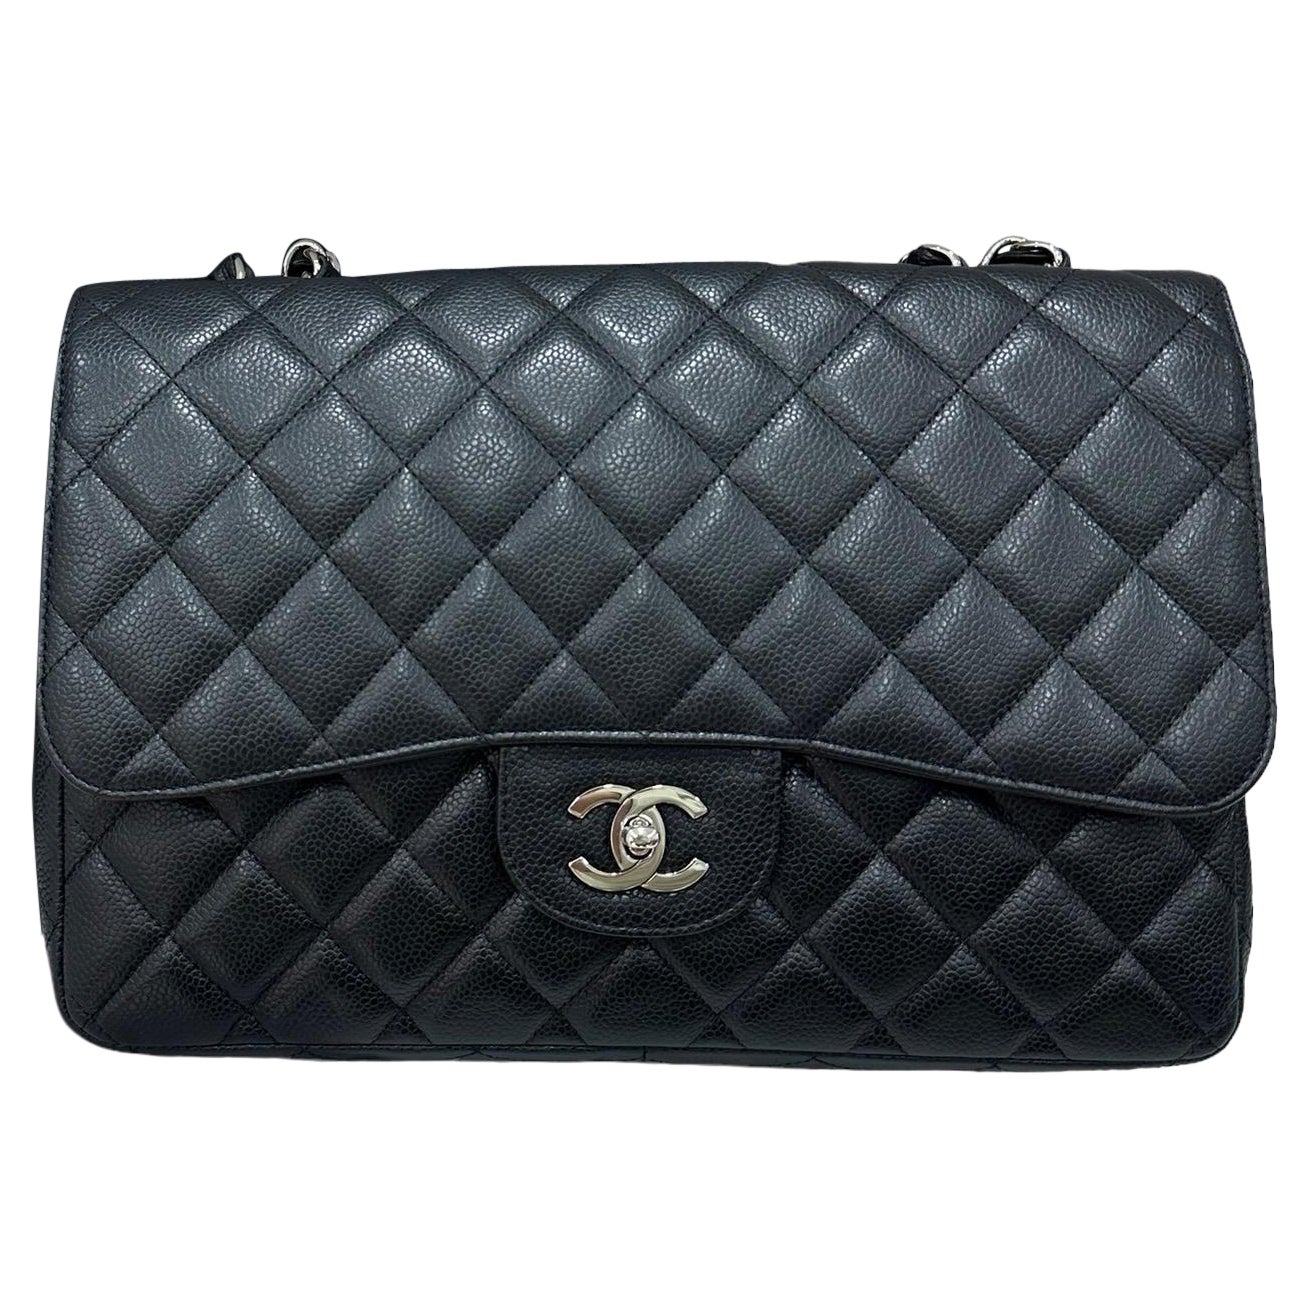 2009 Chanel Jumbo Black Caviar Leather Top Handbag For Sale at 1stDibs